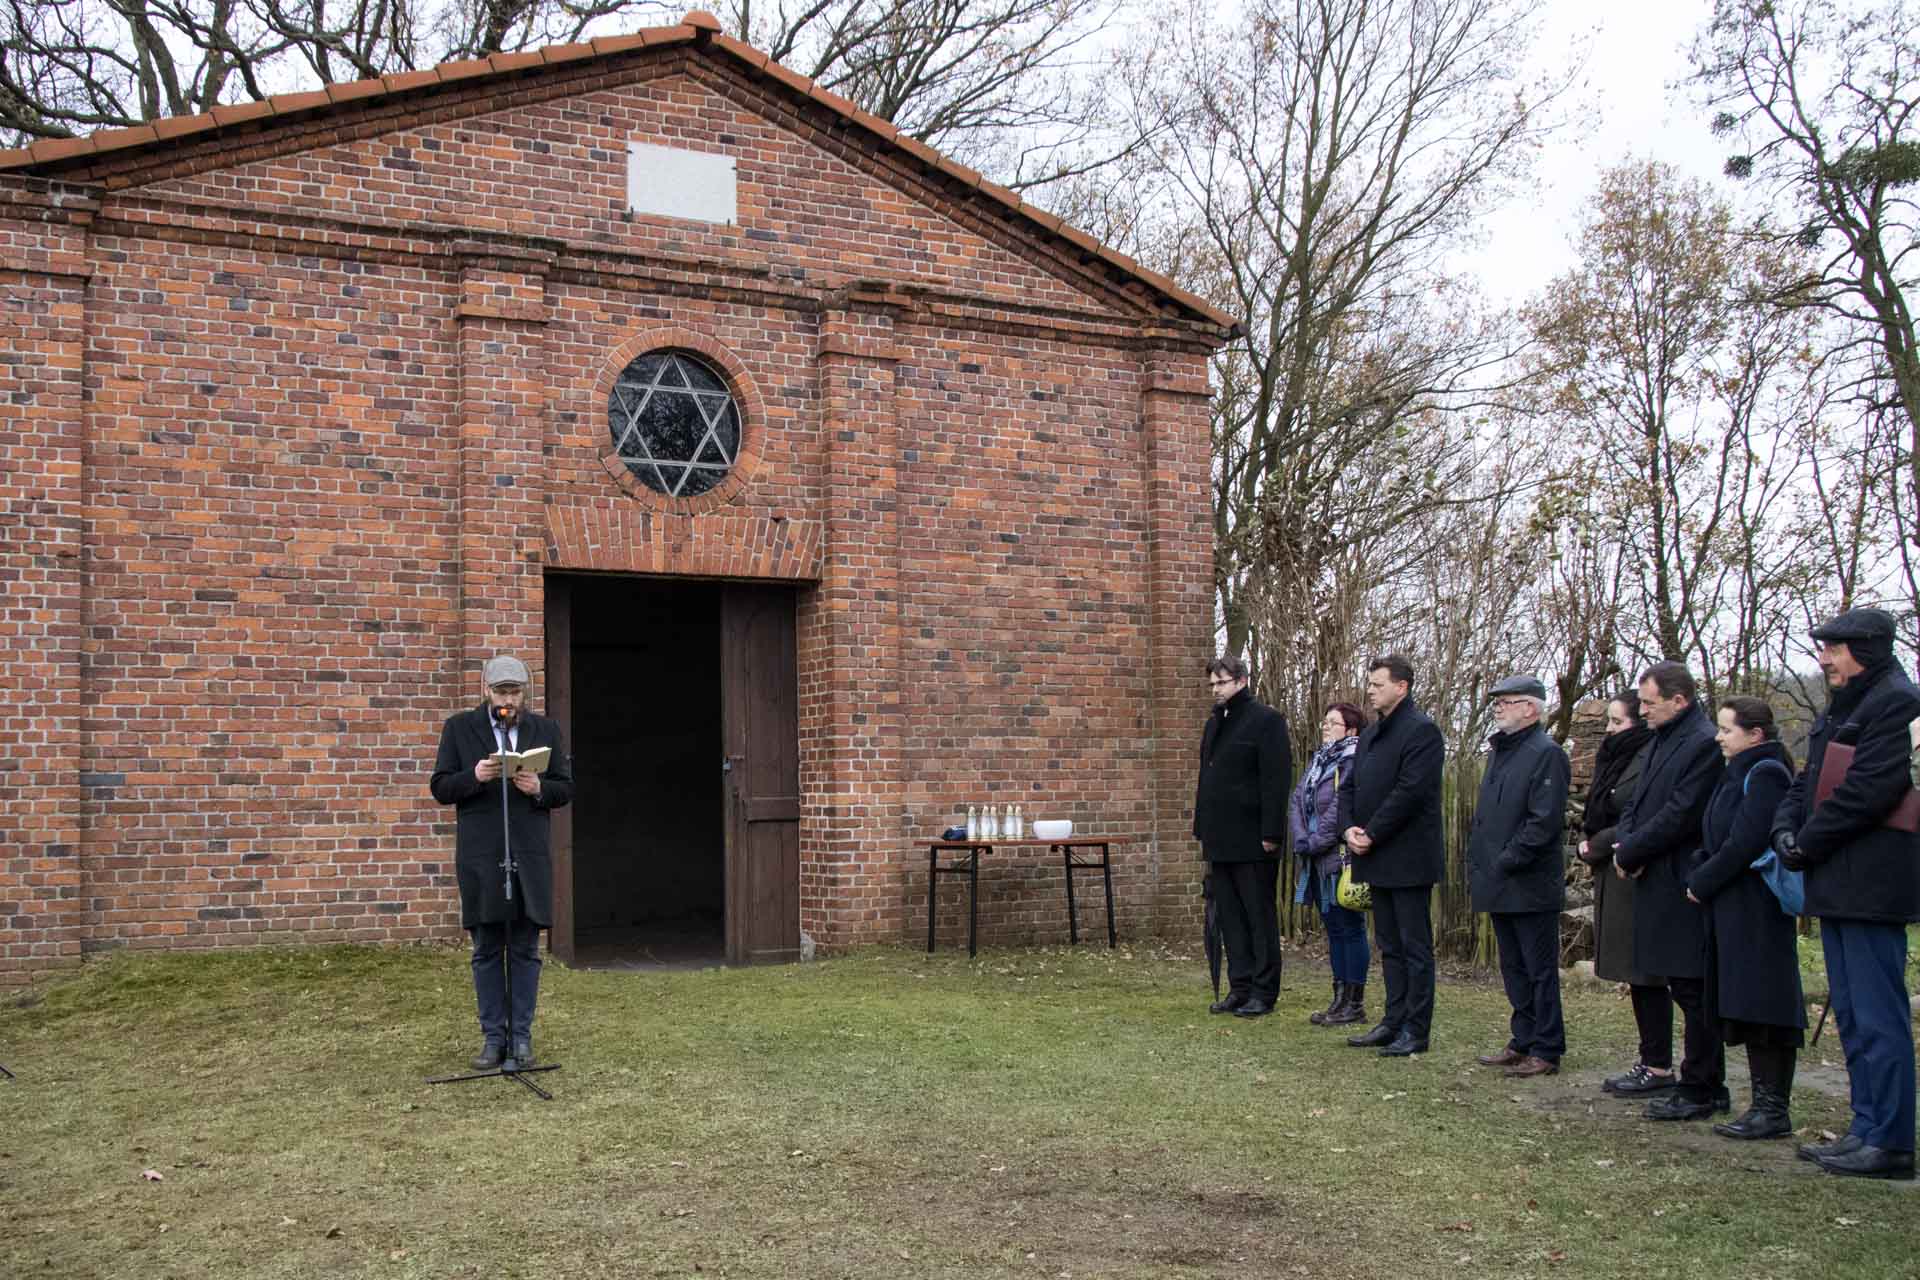 Ceremonia oznakowania cmentarza żydowskiego w Oleśnie